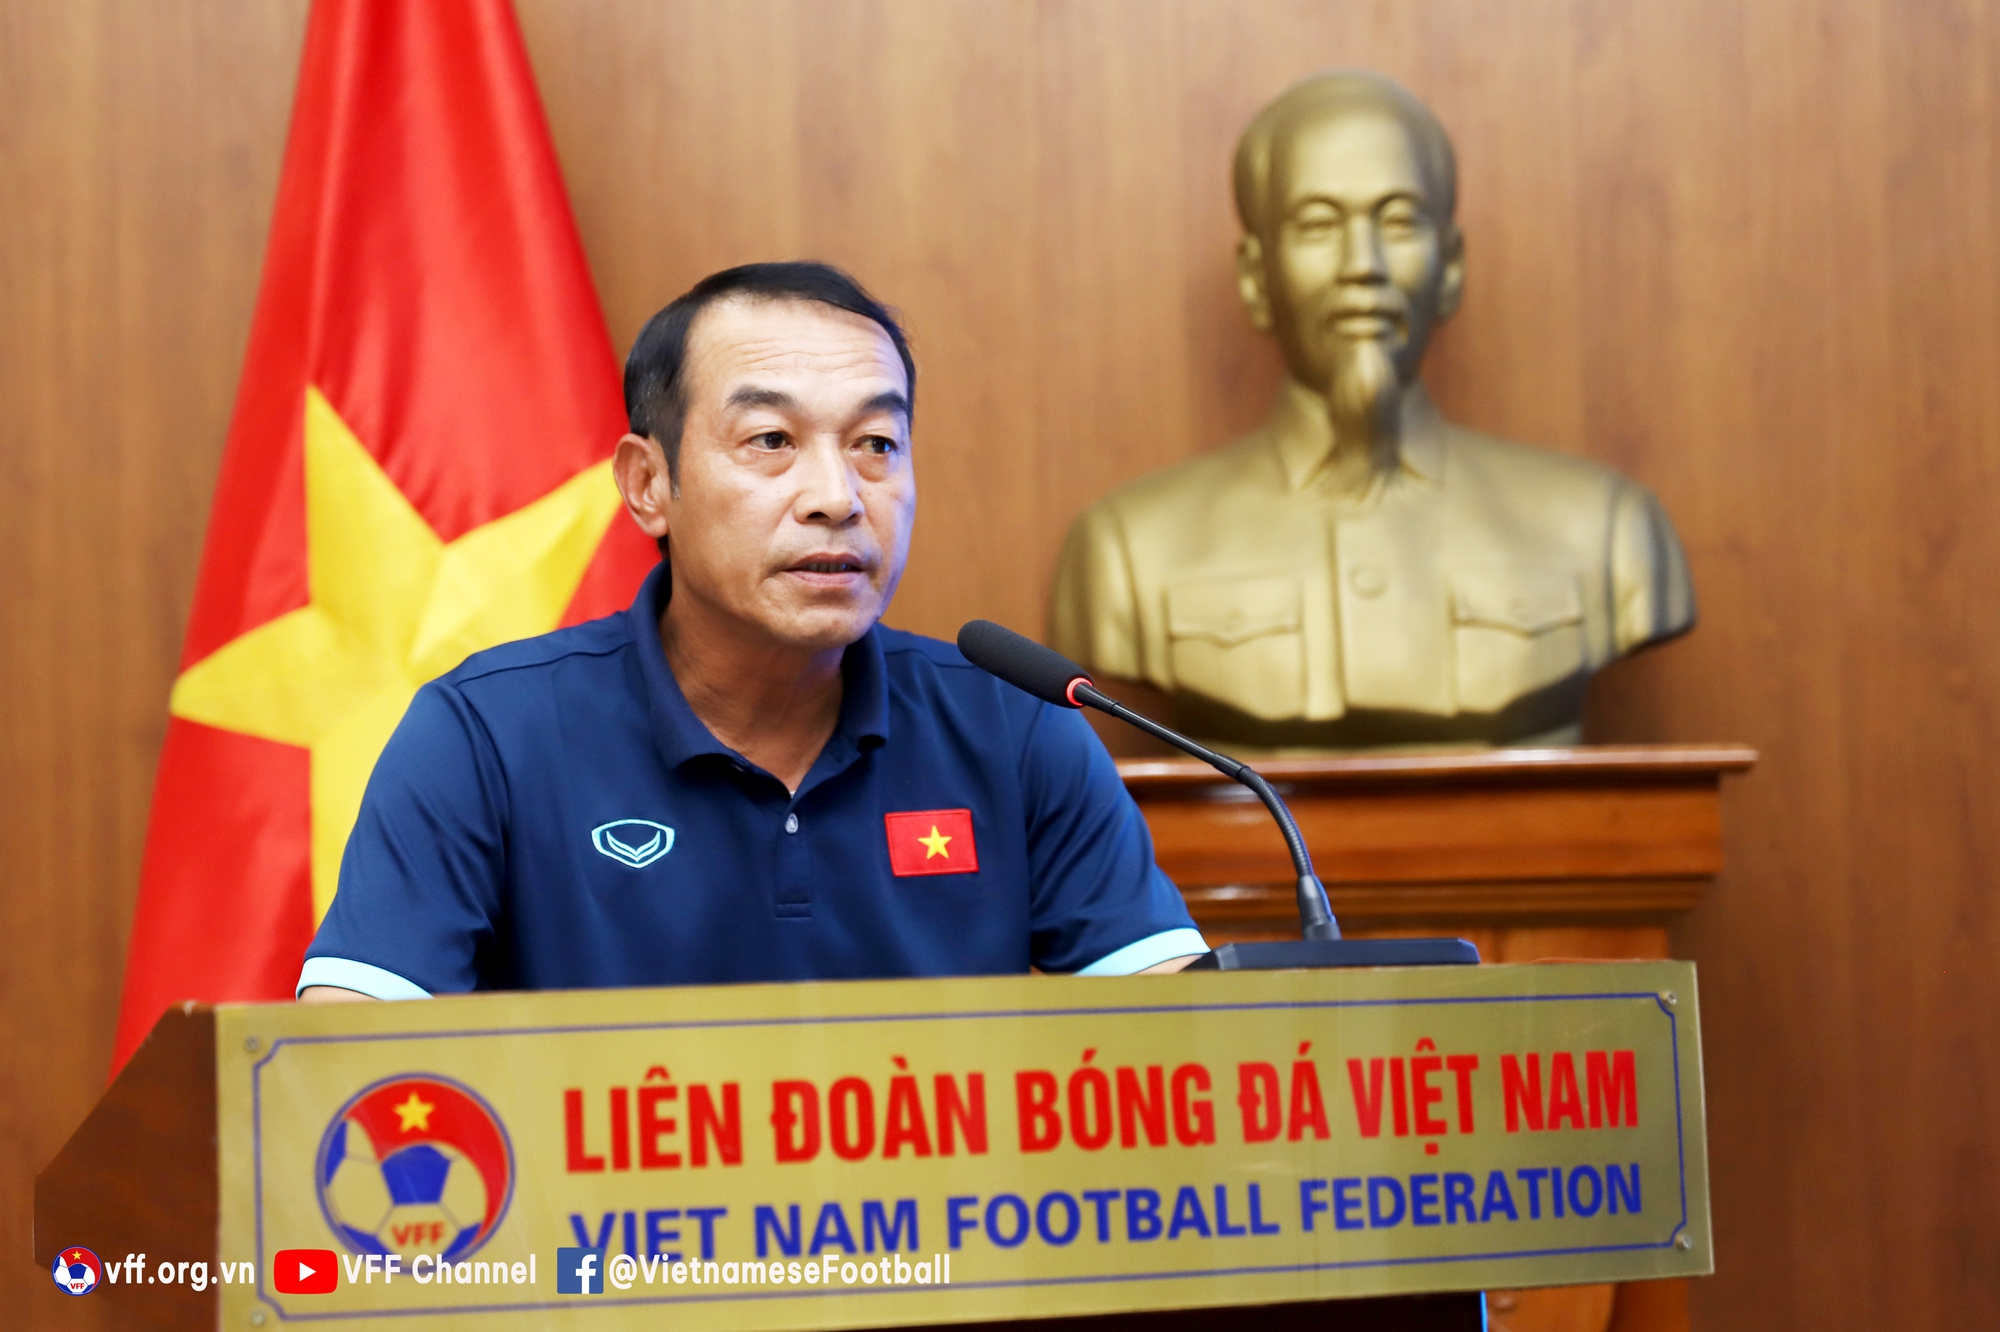 HLV Đinh Thế Nam: “Khuất Văn Khang sẽ đạt điểm rơi phong độ tốt nhất ở vòng loại U20 châu Á” - Ảnh 1.